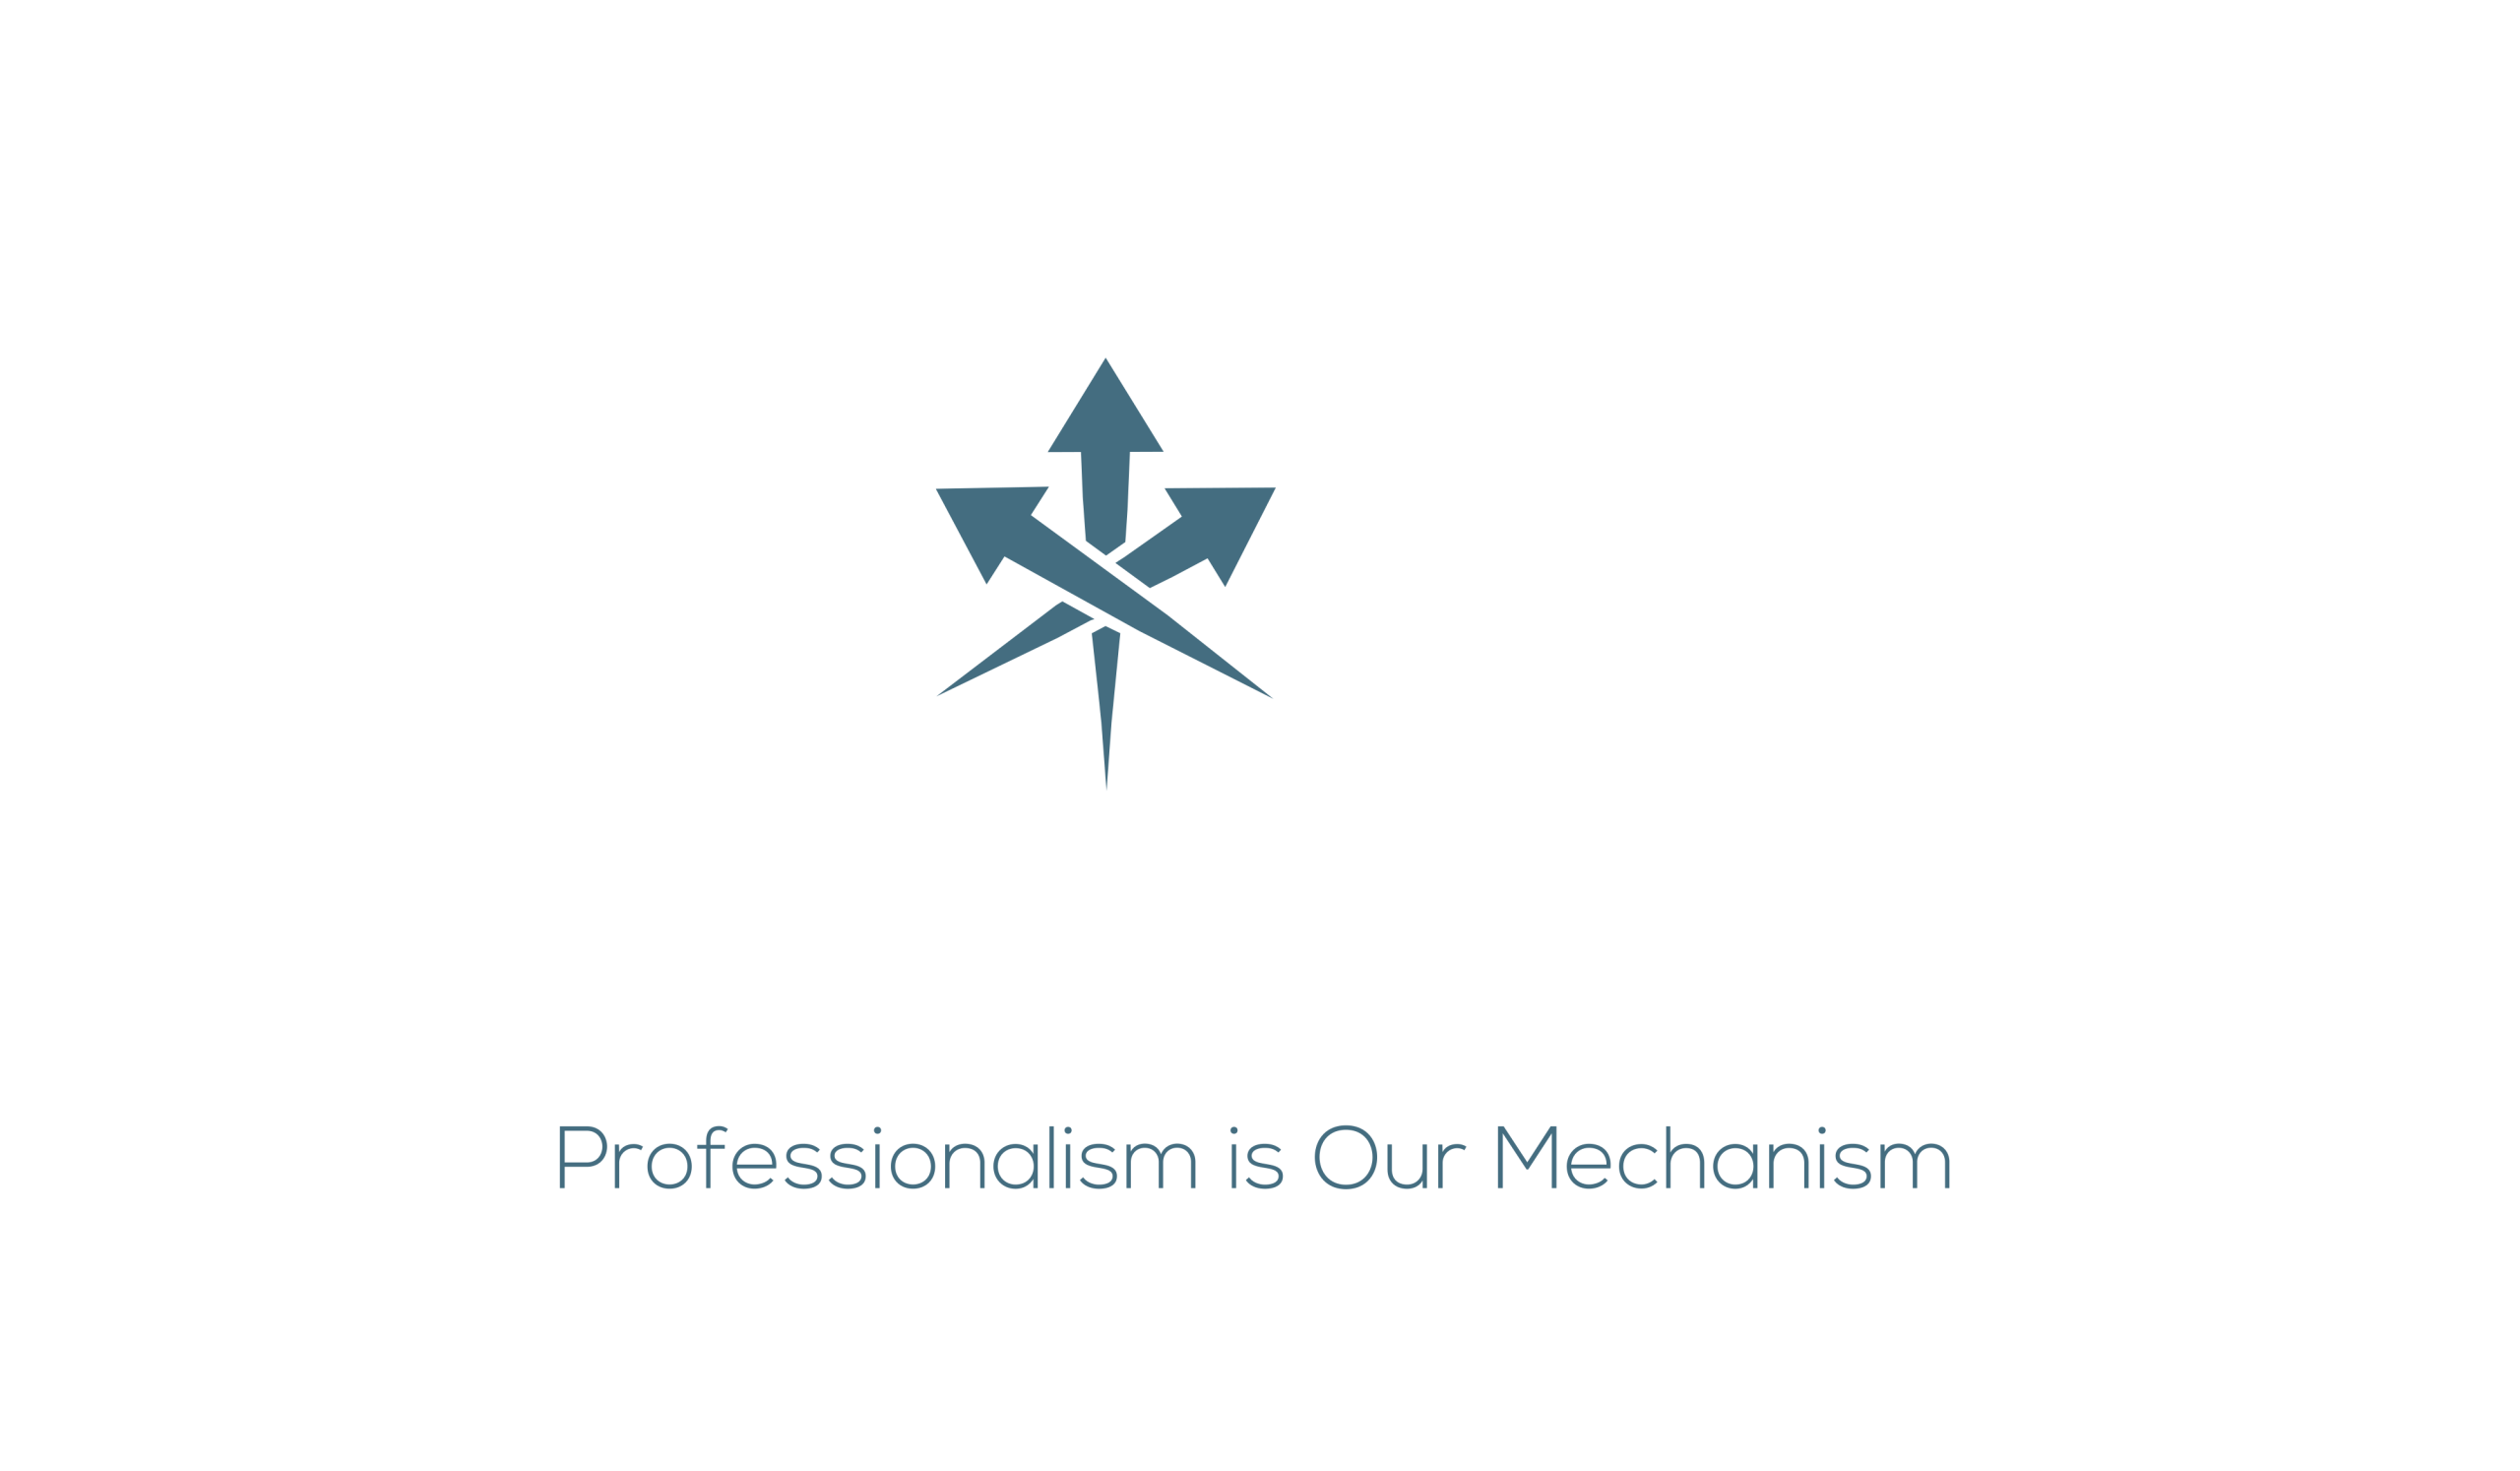 Moe's Limousine & Black car Service